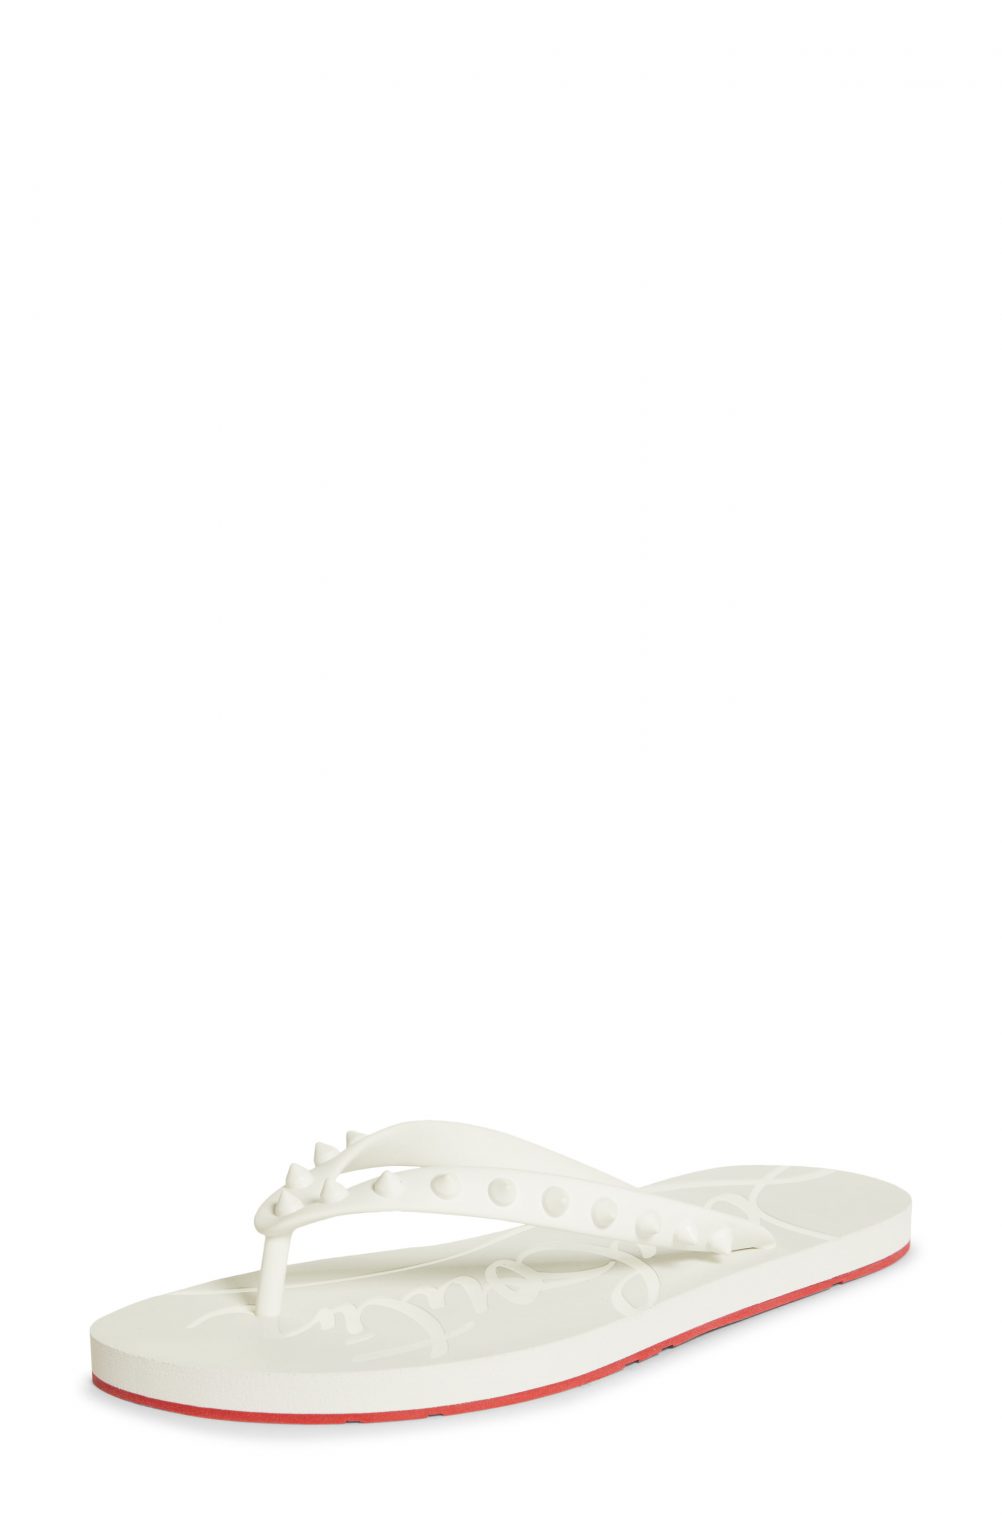 Women’s Christian Louboutin Loubi Flip Flop, Size 4US - White | Fashion ...